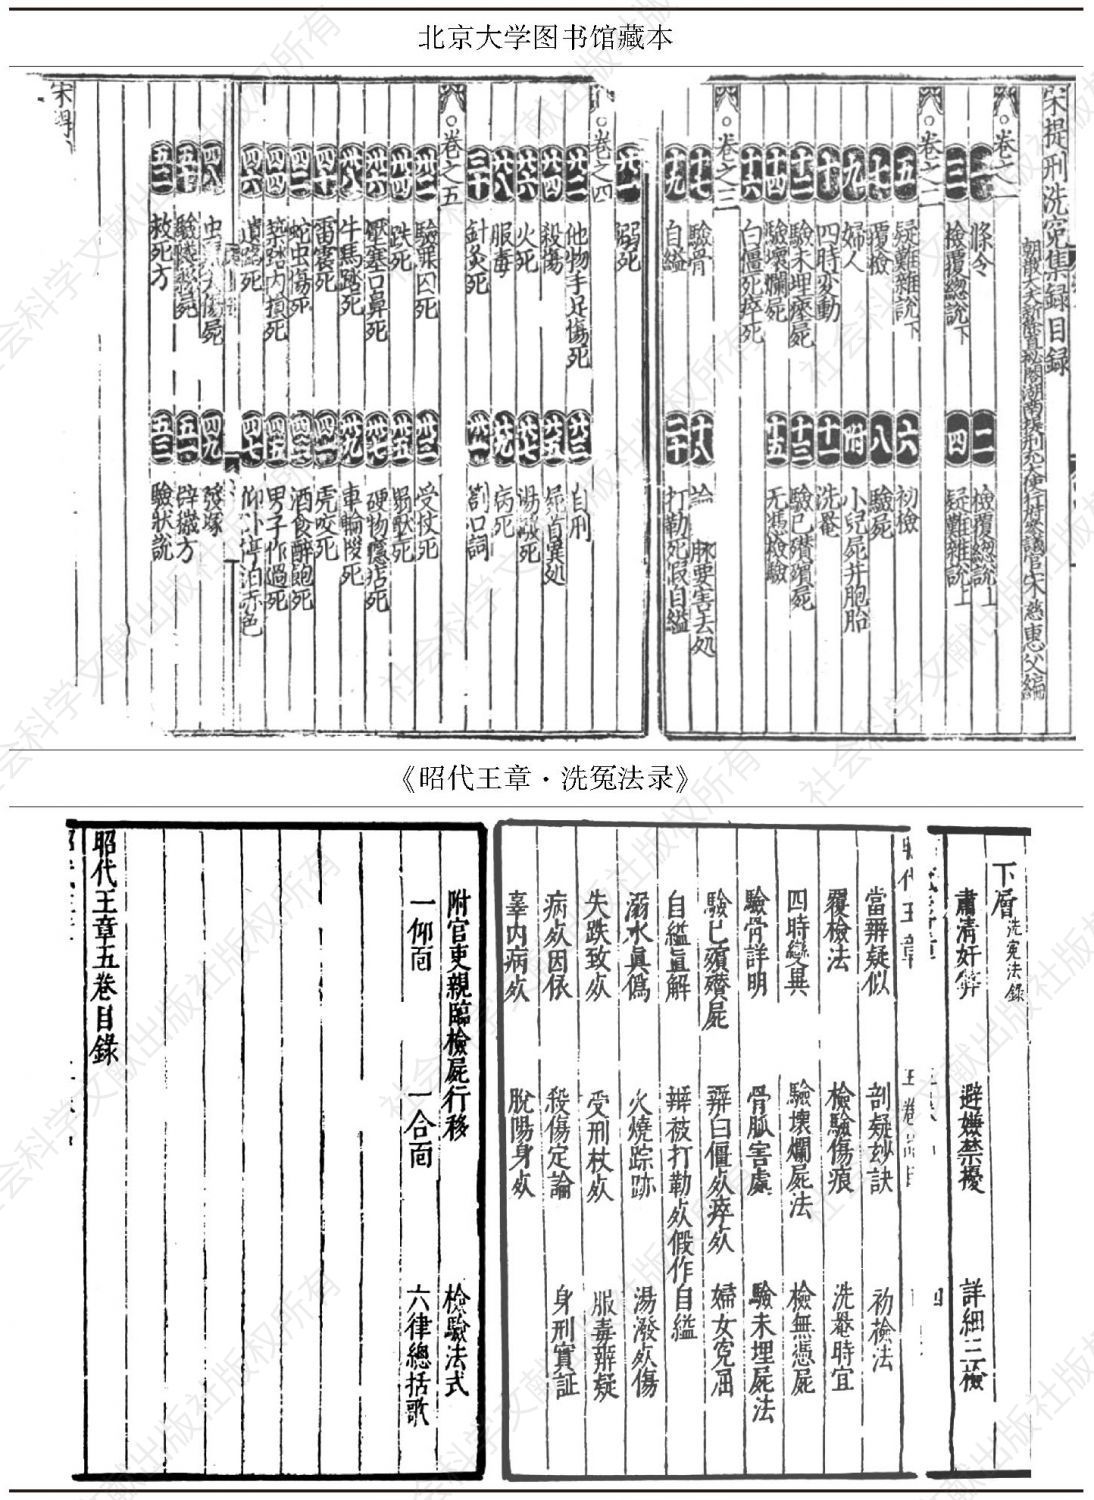 图23 《昭代王章·洗冤法录》与北京大学图书馆藏本目录对照